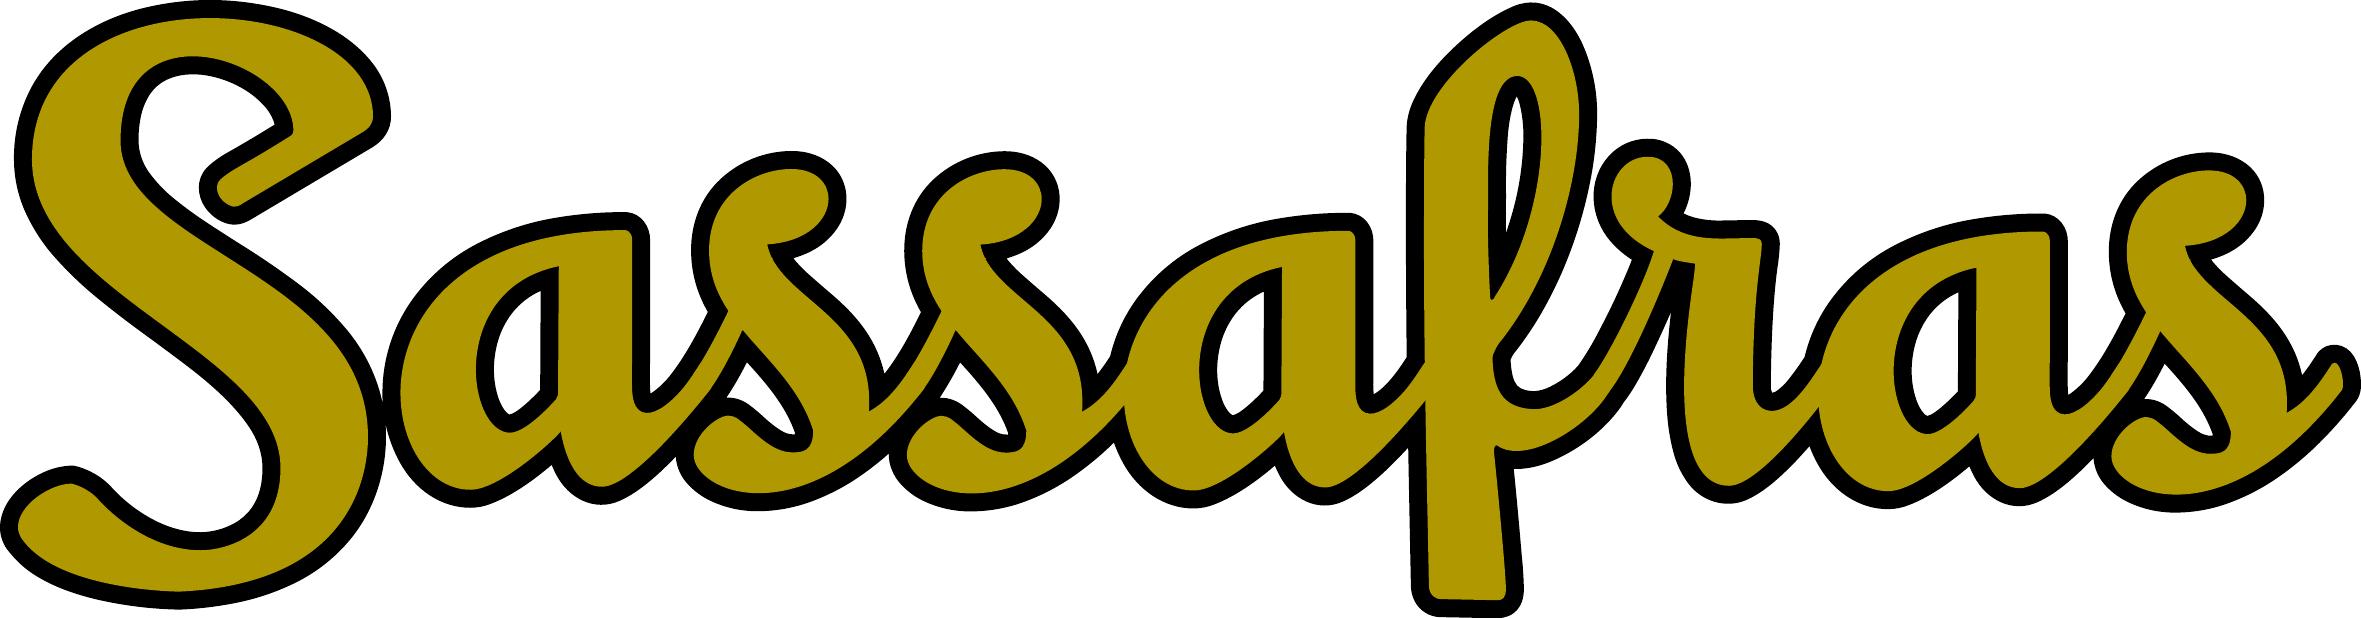 Sassafras Logo JPEG.jpg